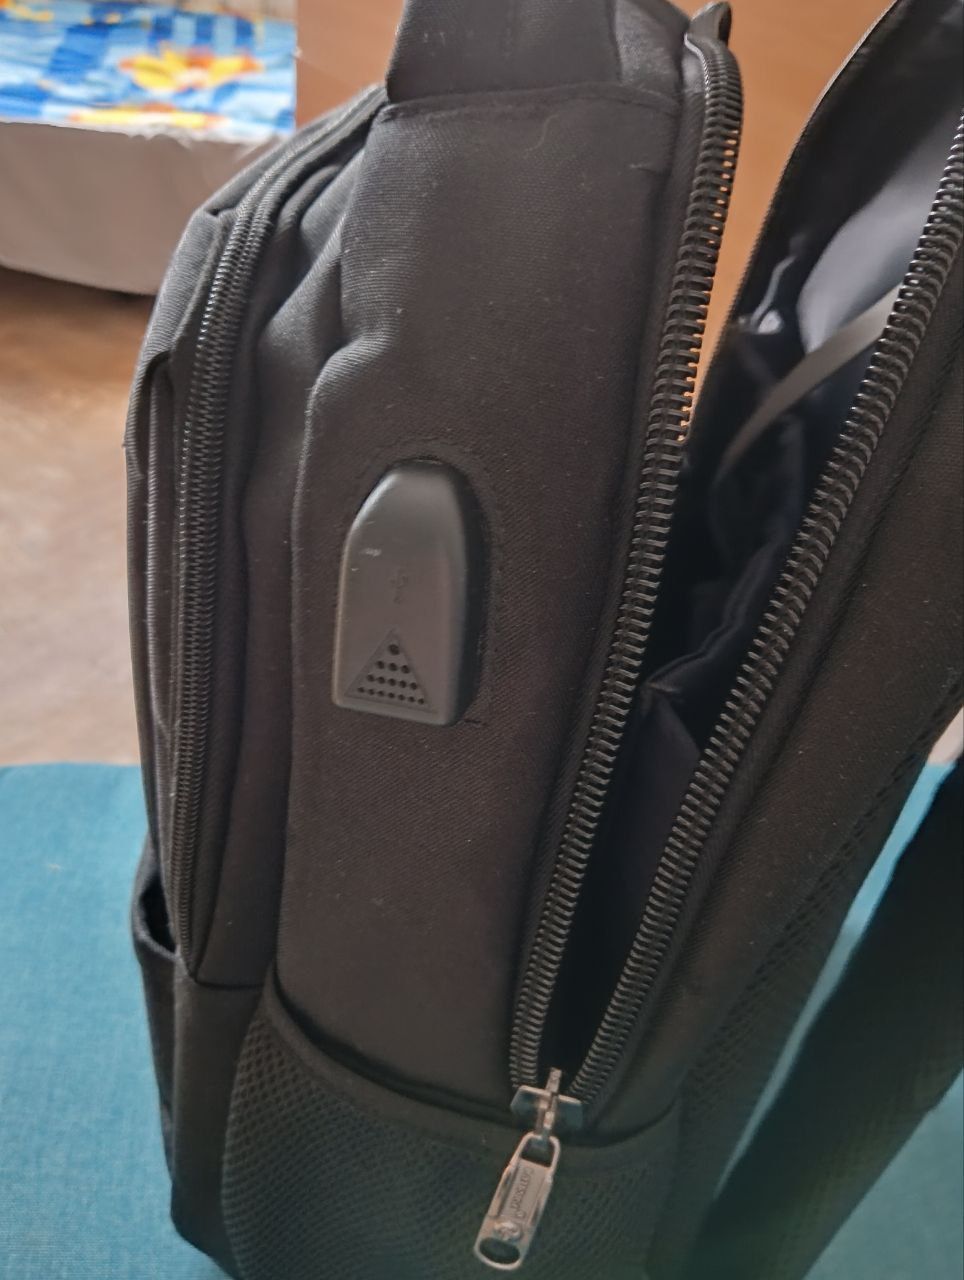 Чоловічий міський рюкзак з відділом ноутбука